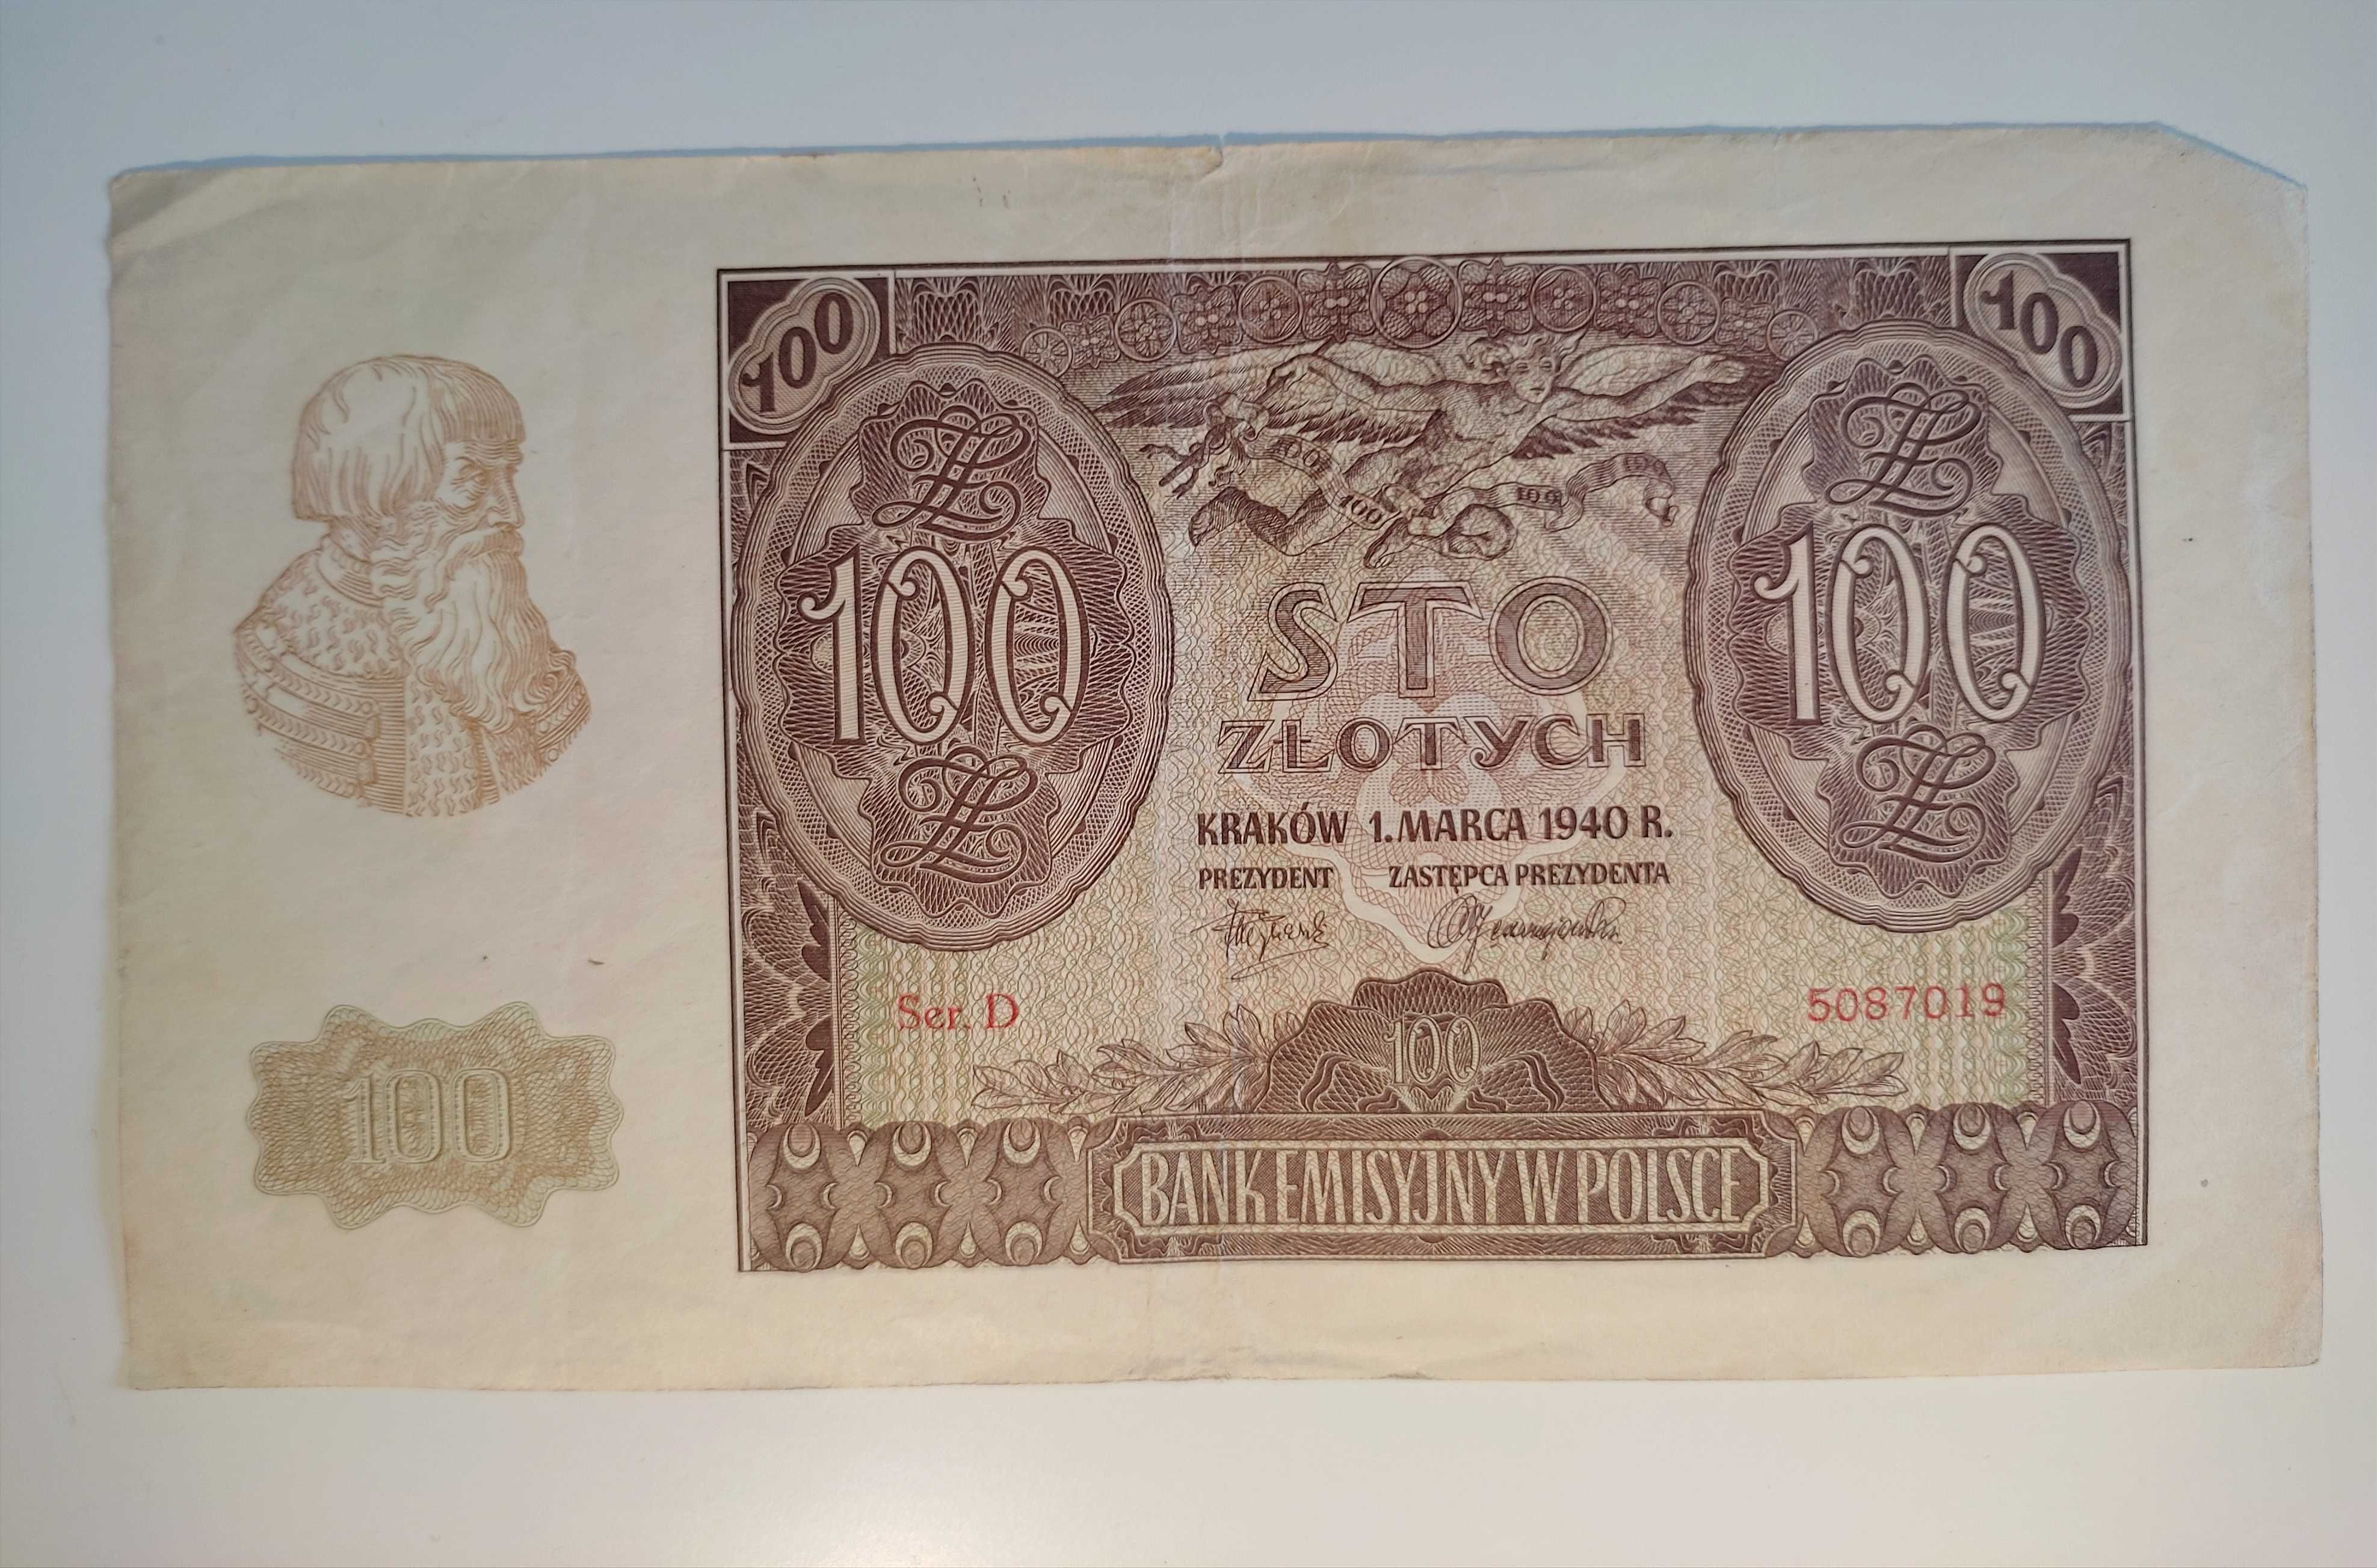 Banknoty: 500zł, 100zł, 50zł | 1940r.- 1941r. |